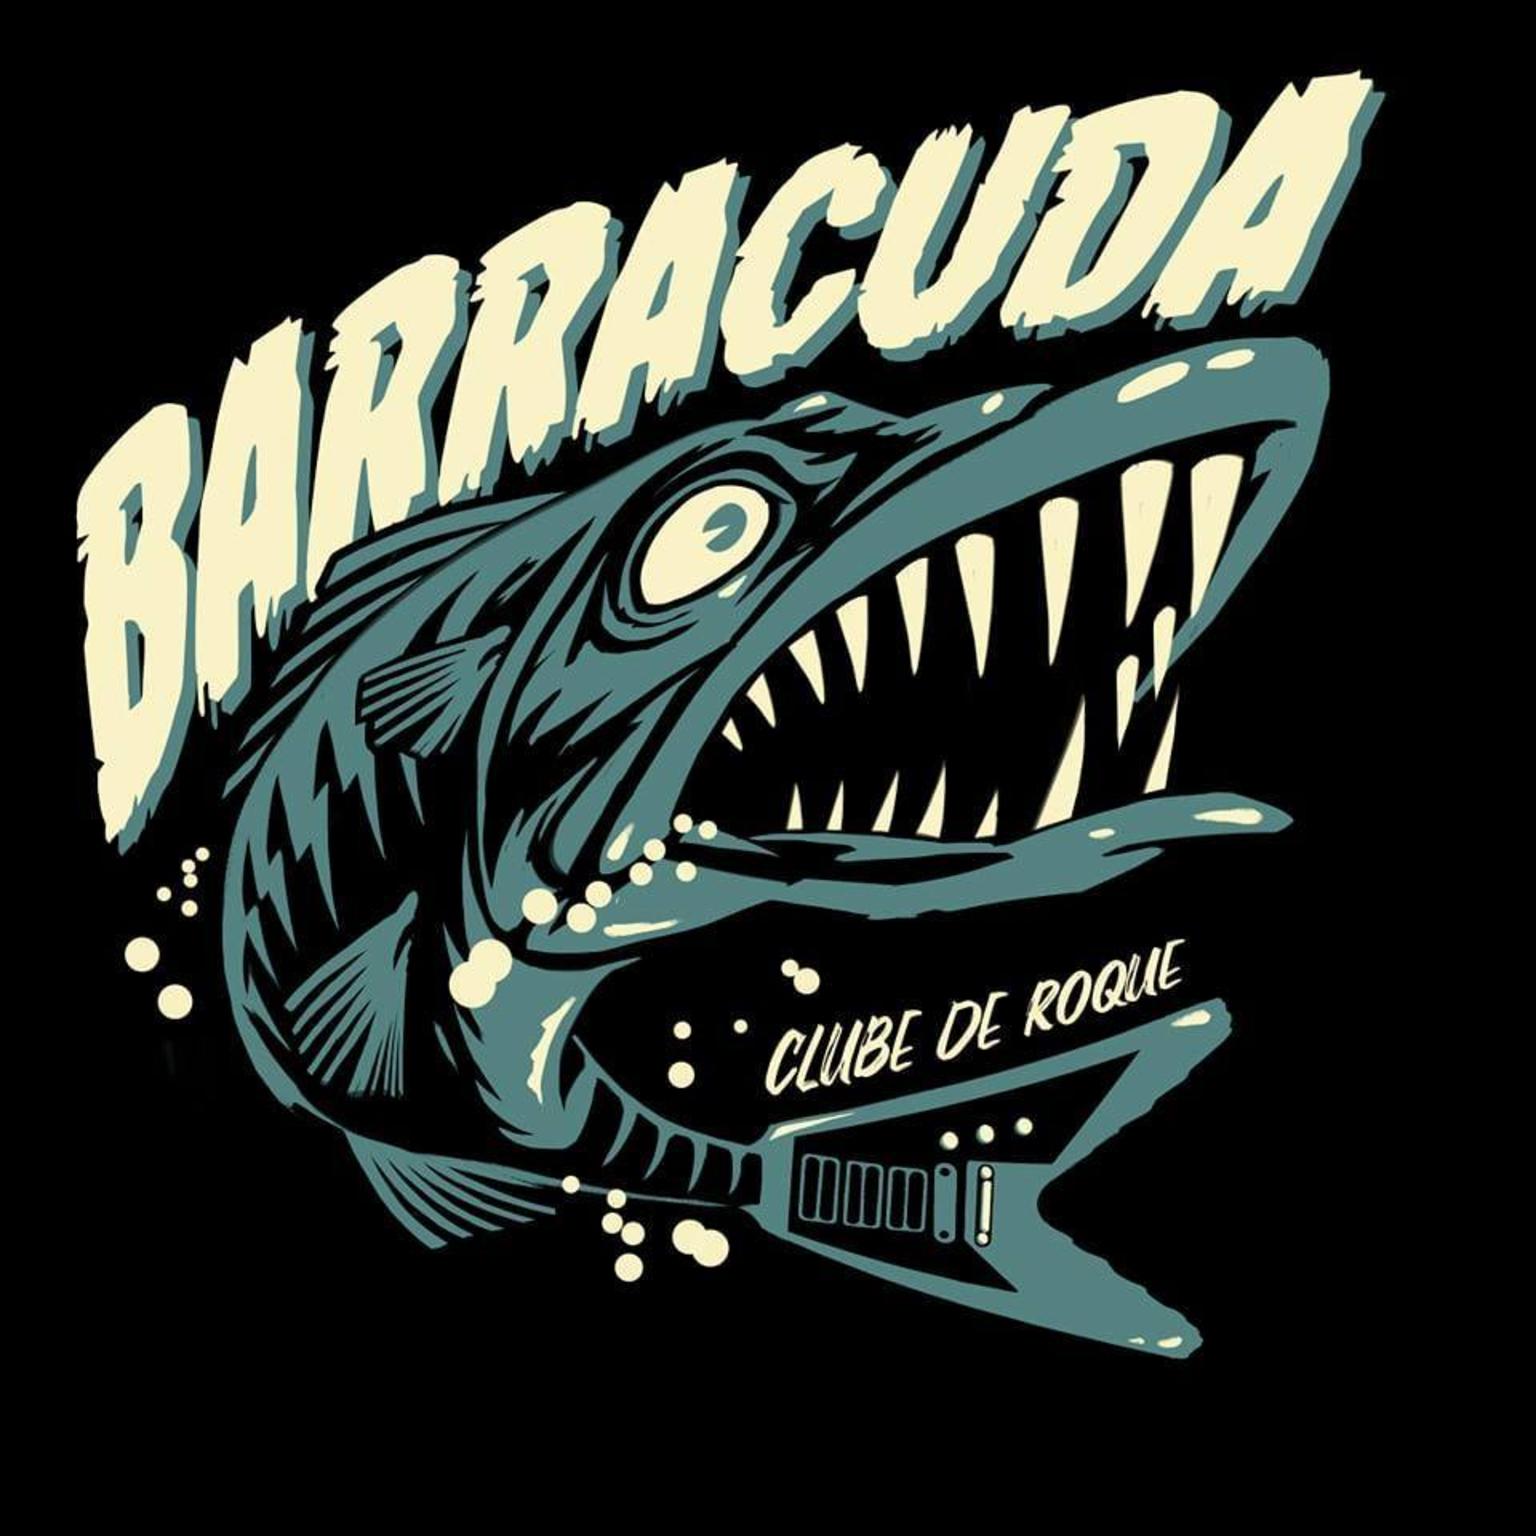 Barracuda Rock Club